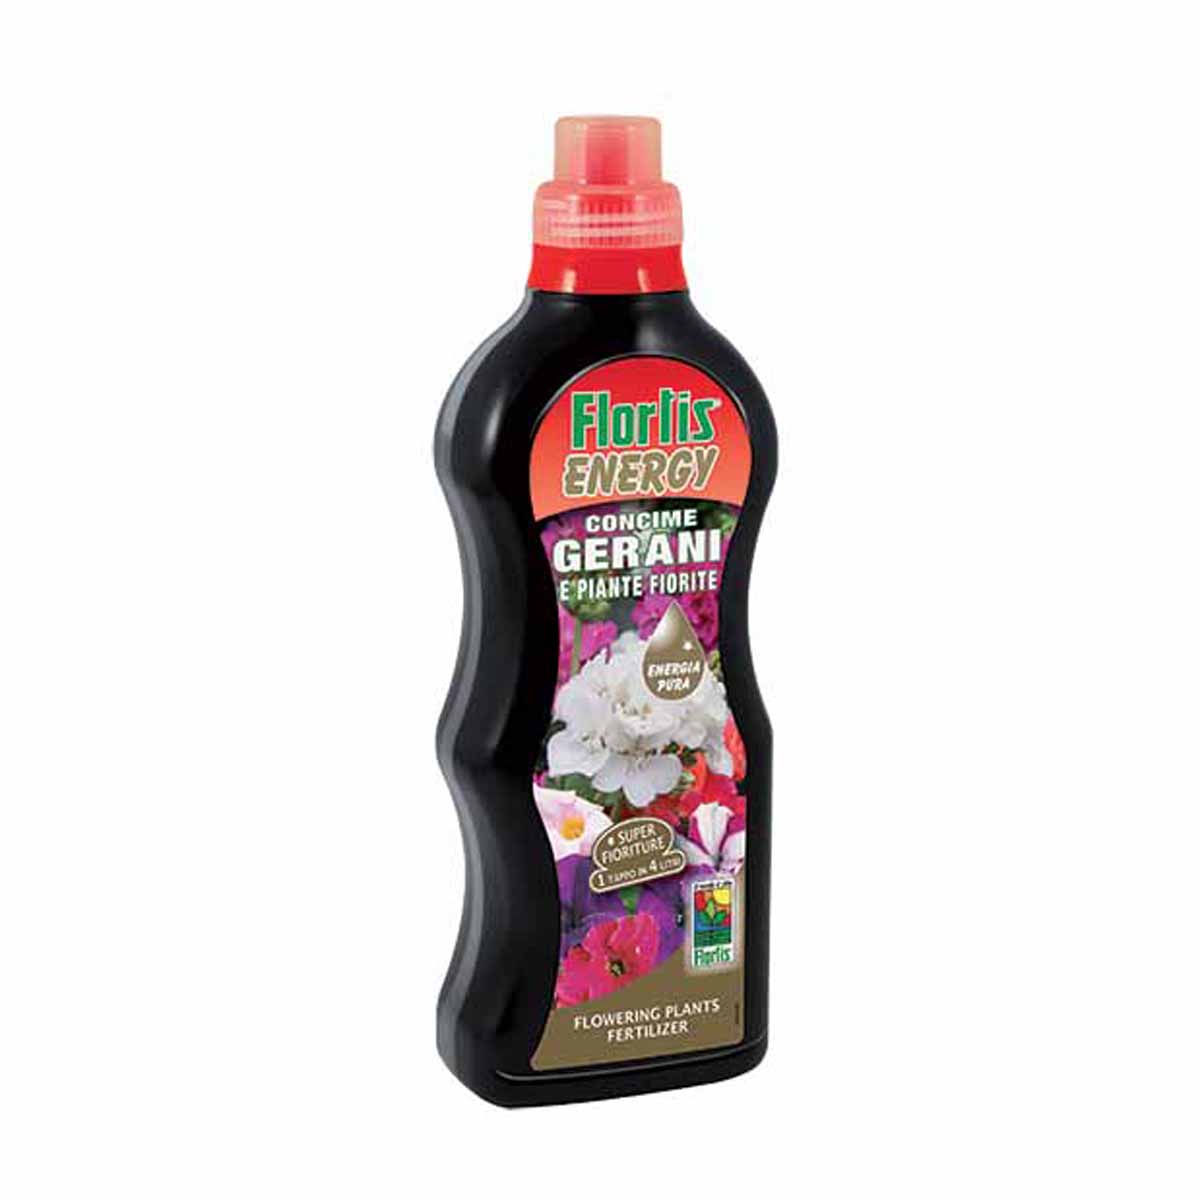 Flortis Energy Concime liquido per piante fiorite 1200g